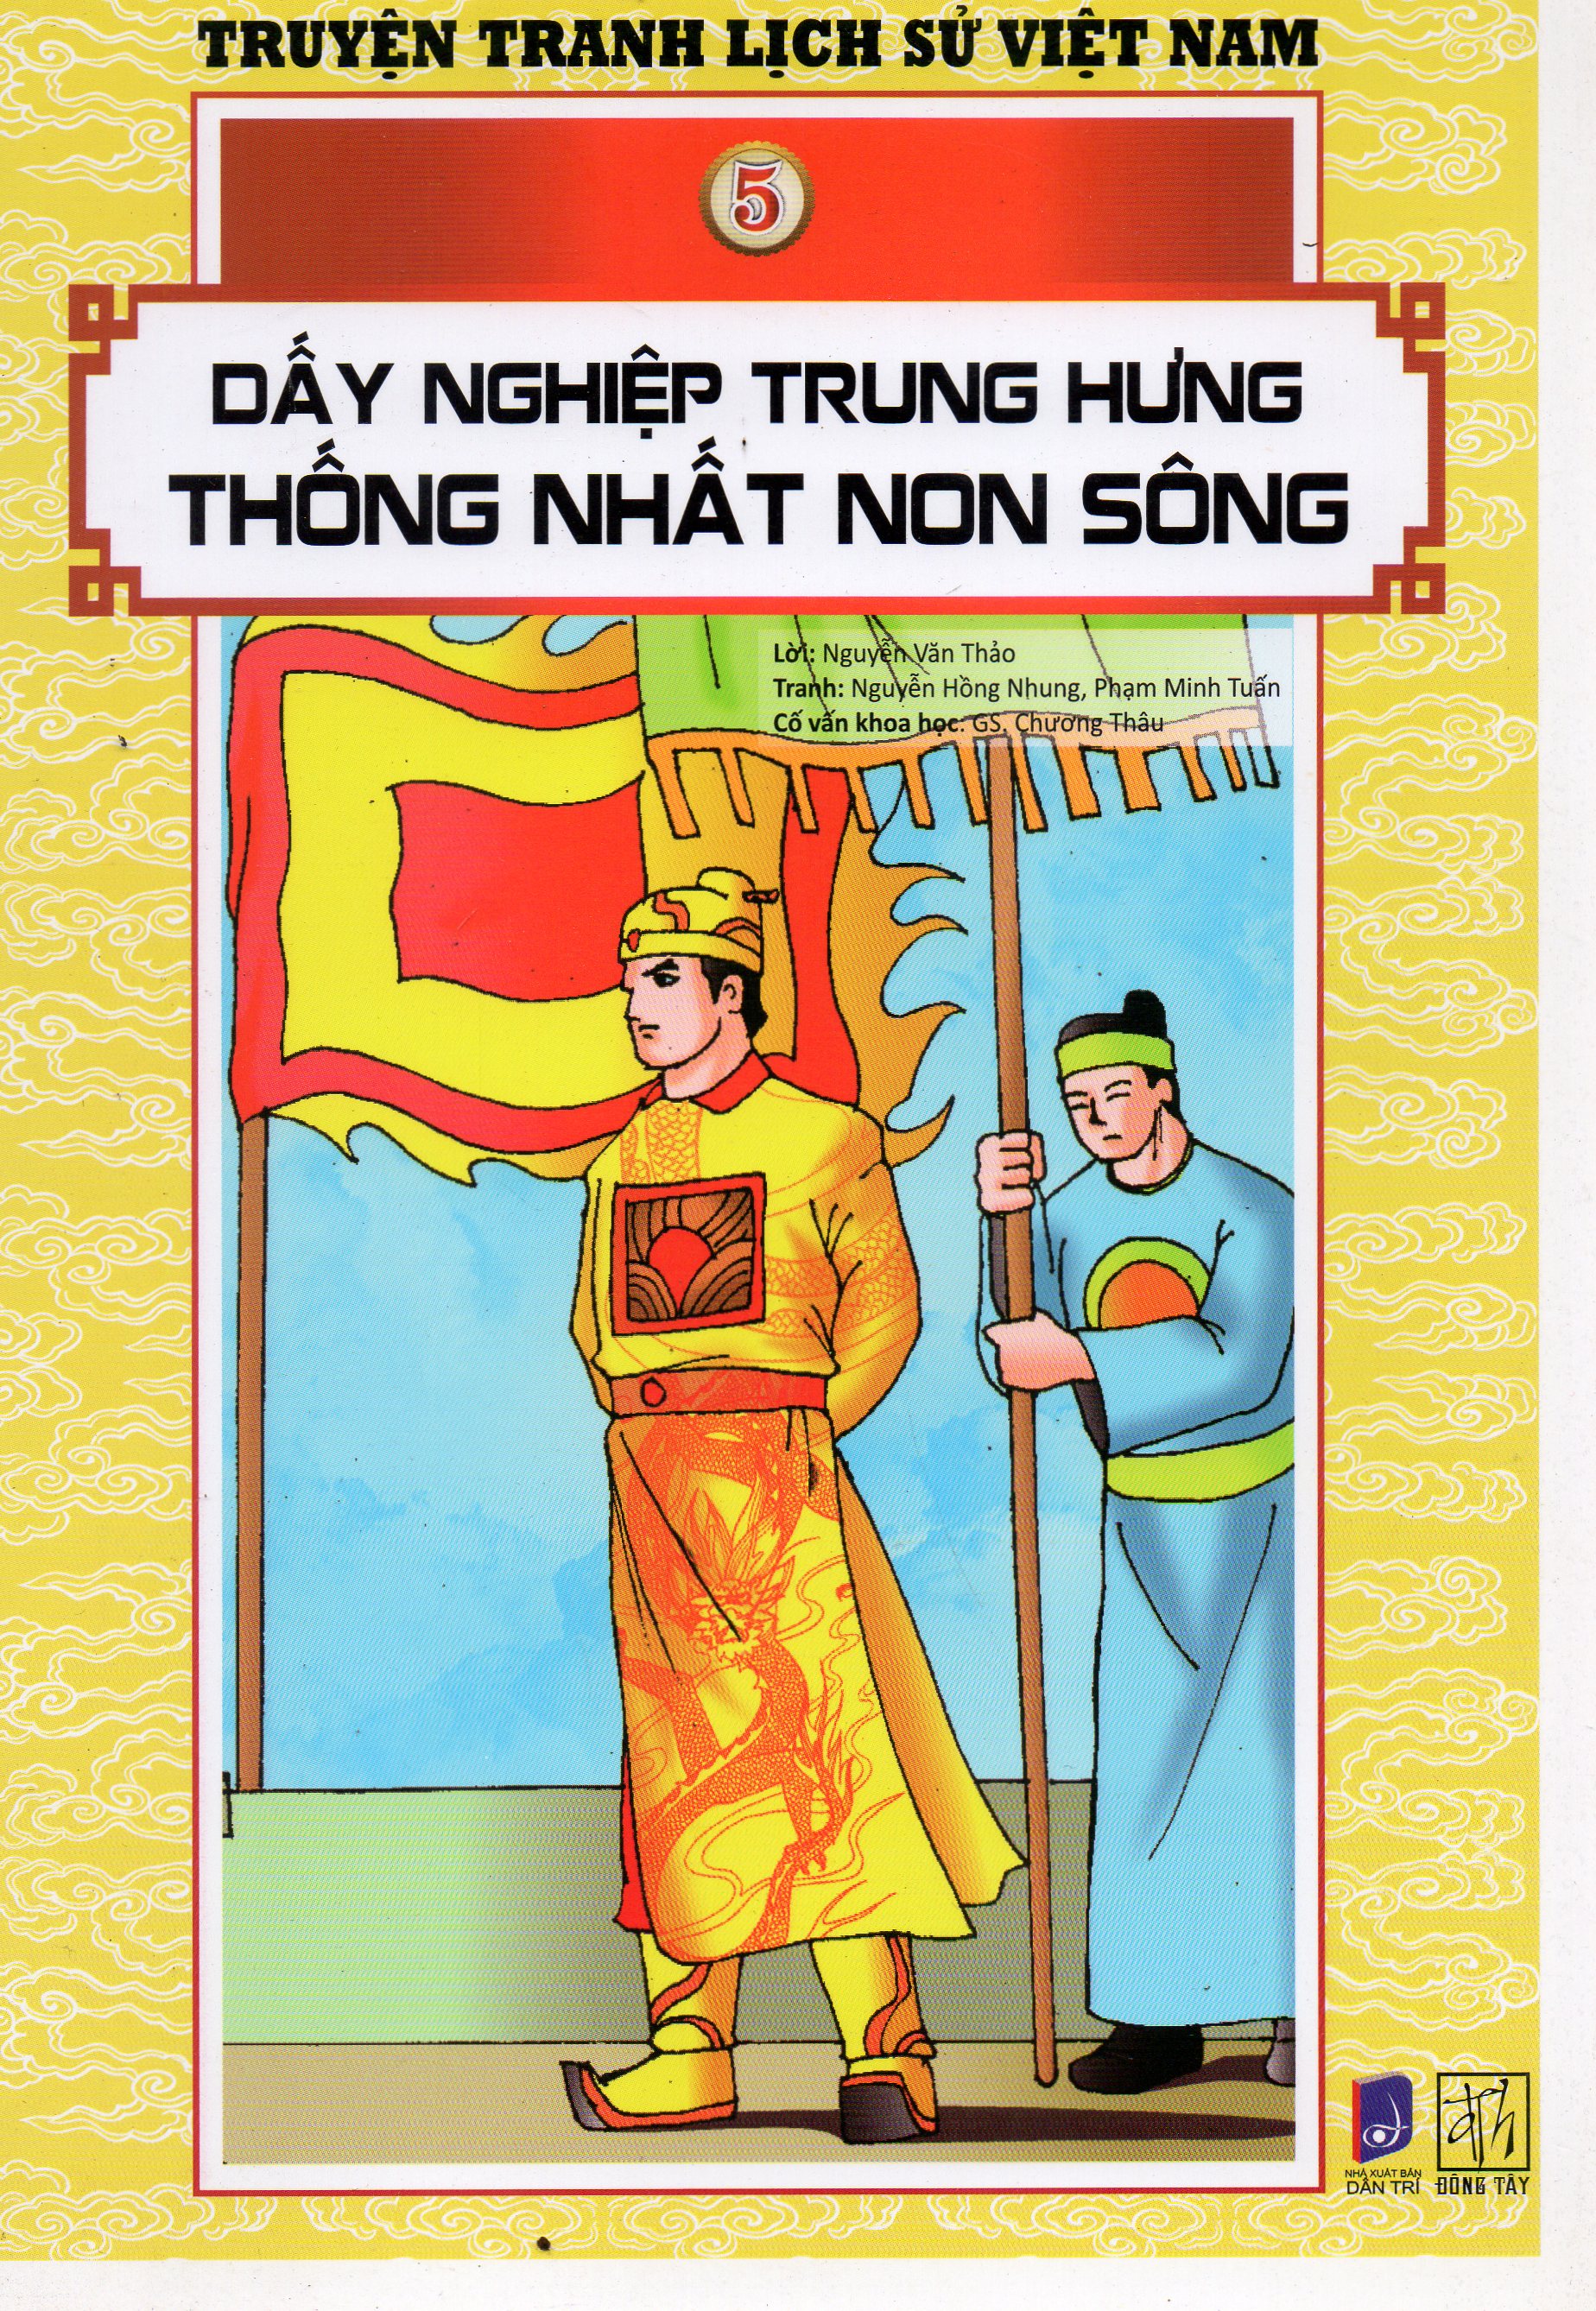 Truyện tranh lịch sử Việt Nam - Dấy nghiệp trung hưng thống nhất non sông (Tranh màu)